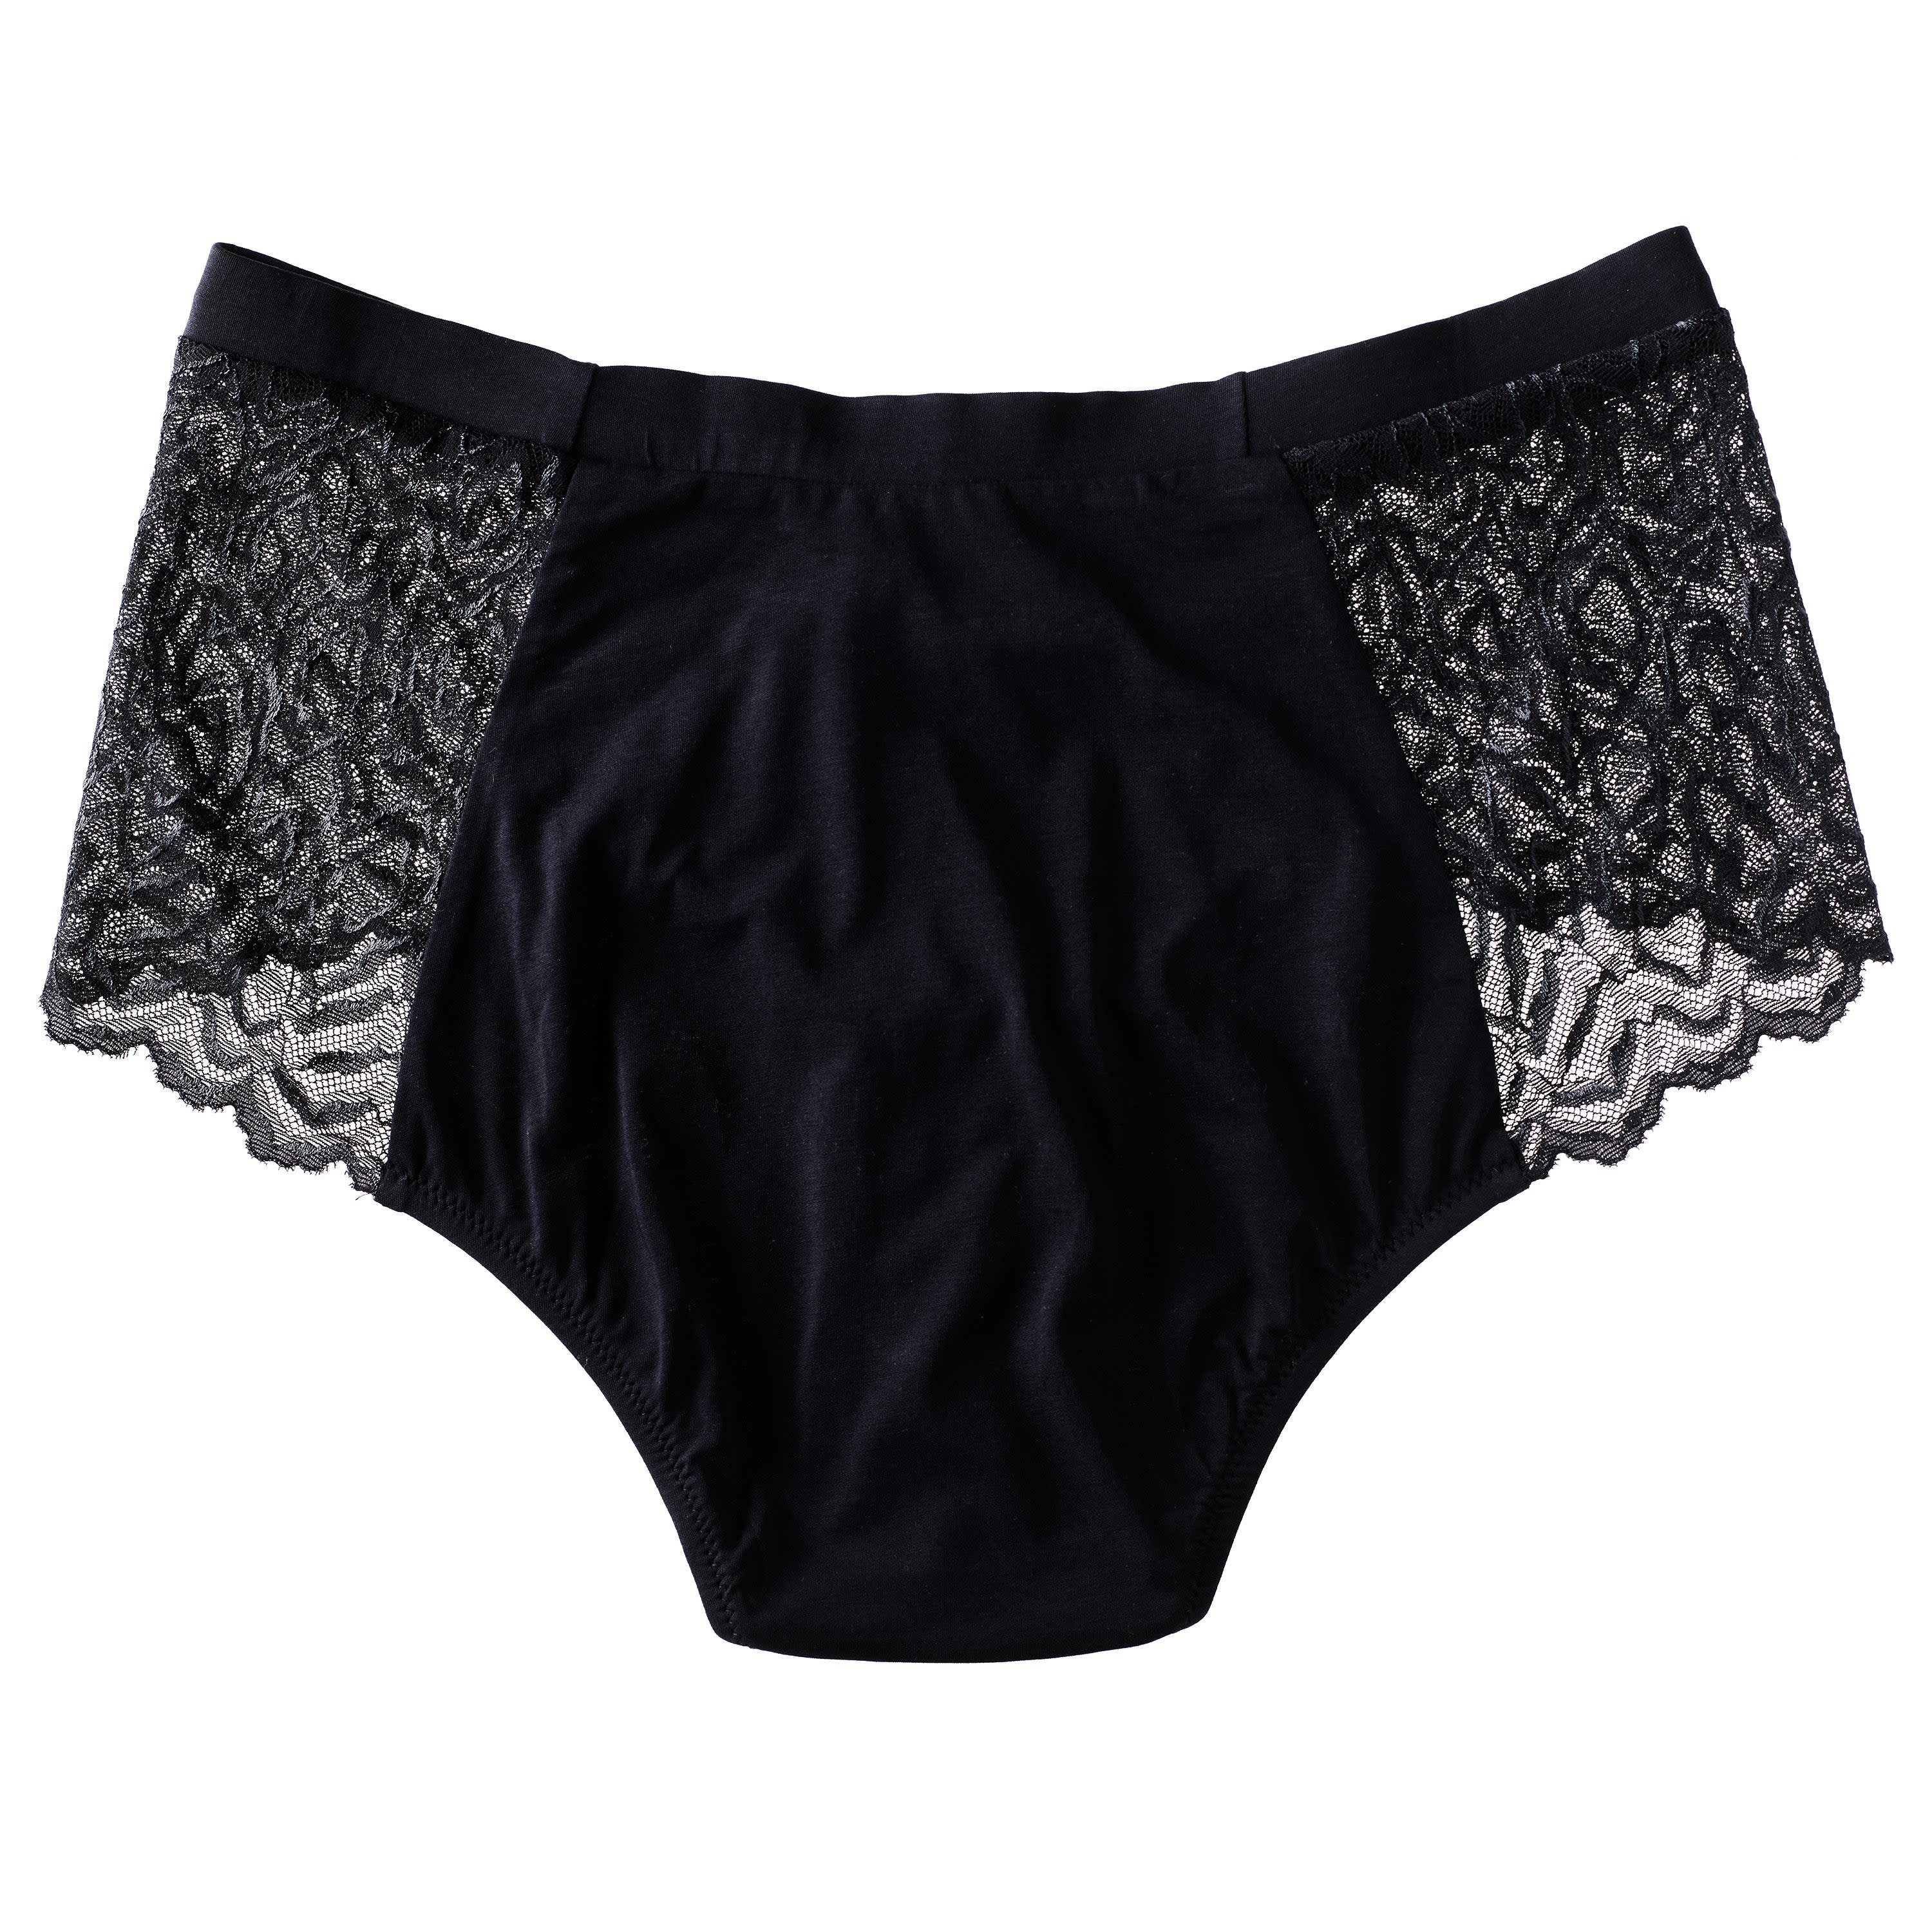 Sakthi 100% Cotton Soft Fine Jersey Ladies Panties Girls Panties